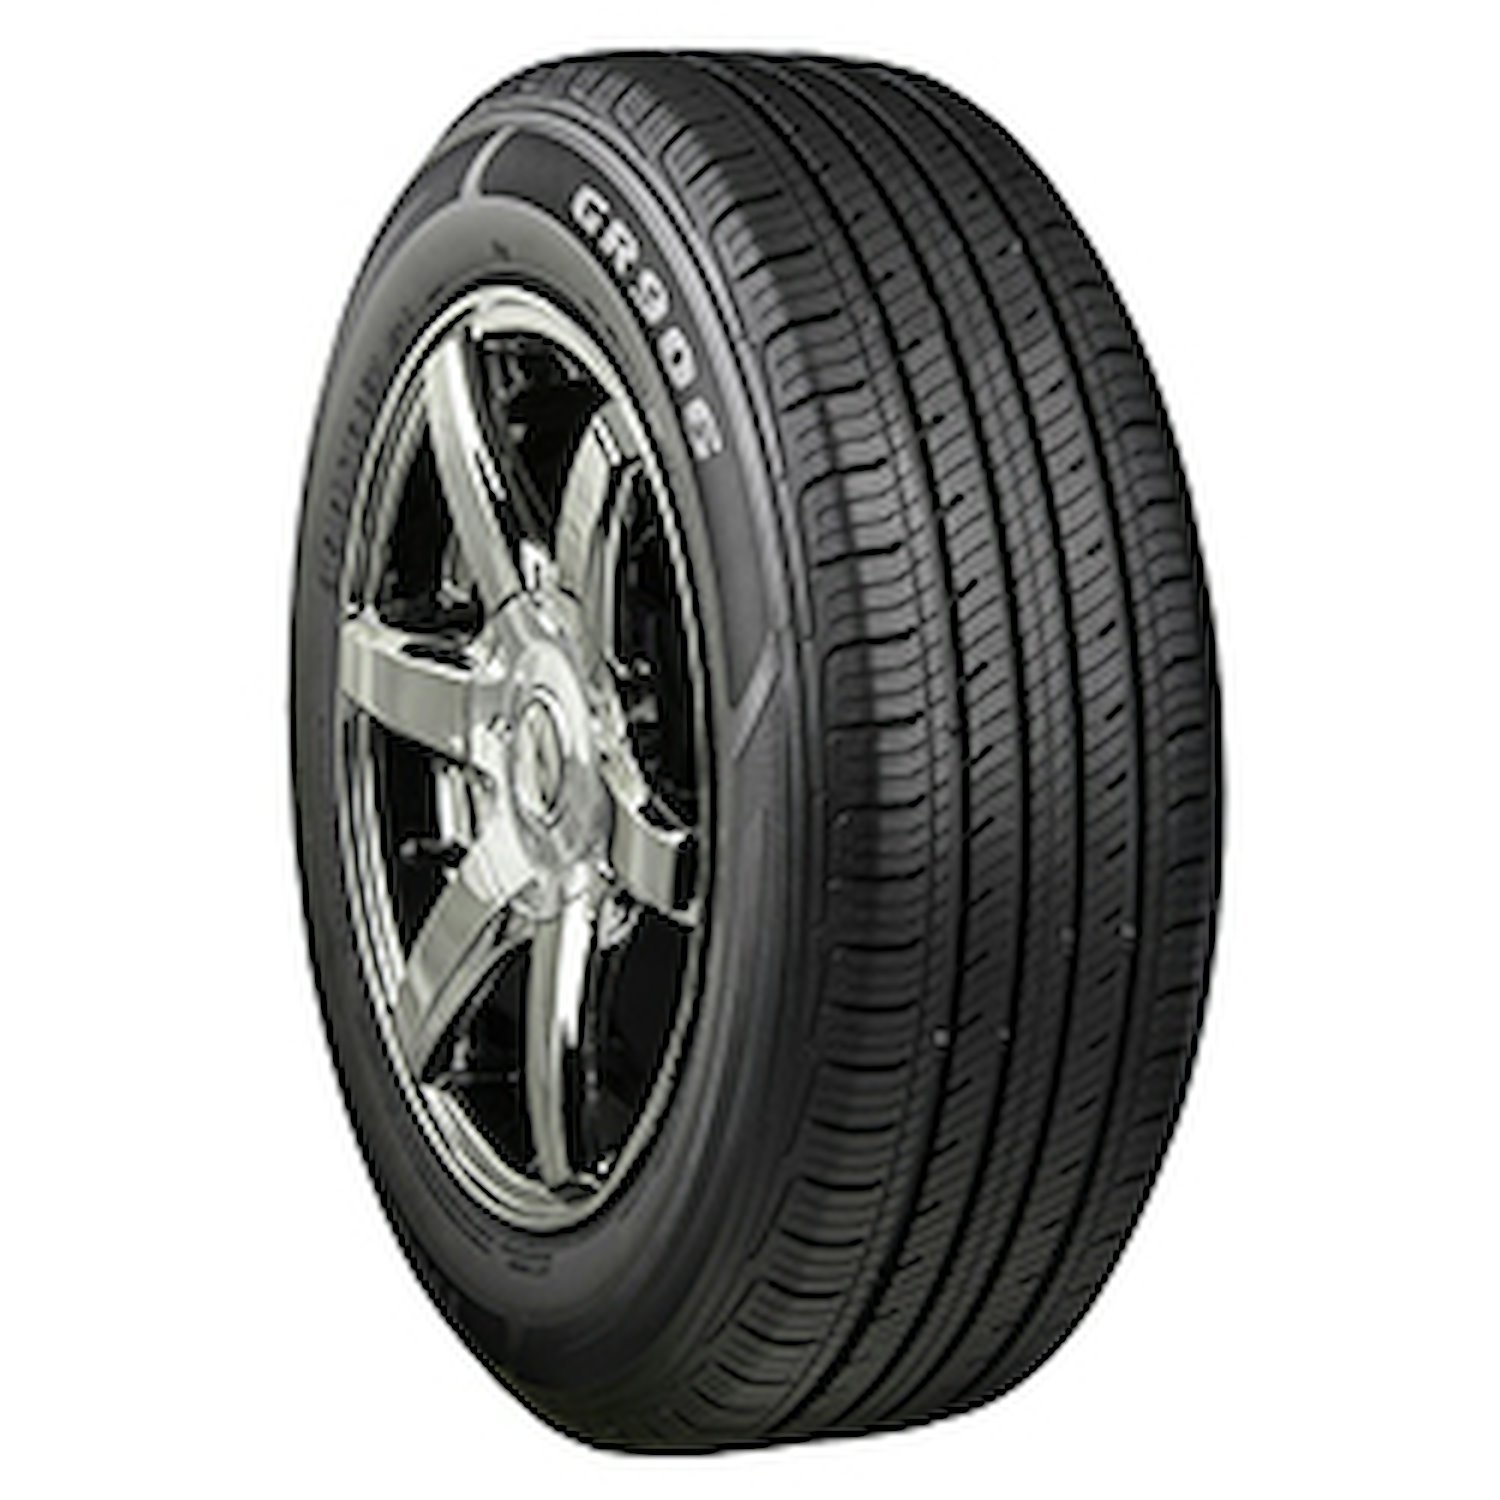 GR906 Tire, 215/55R17 94H